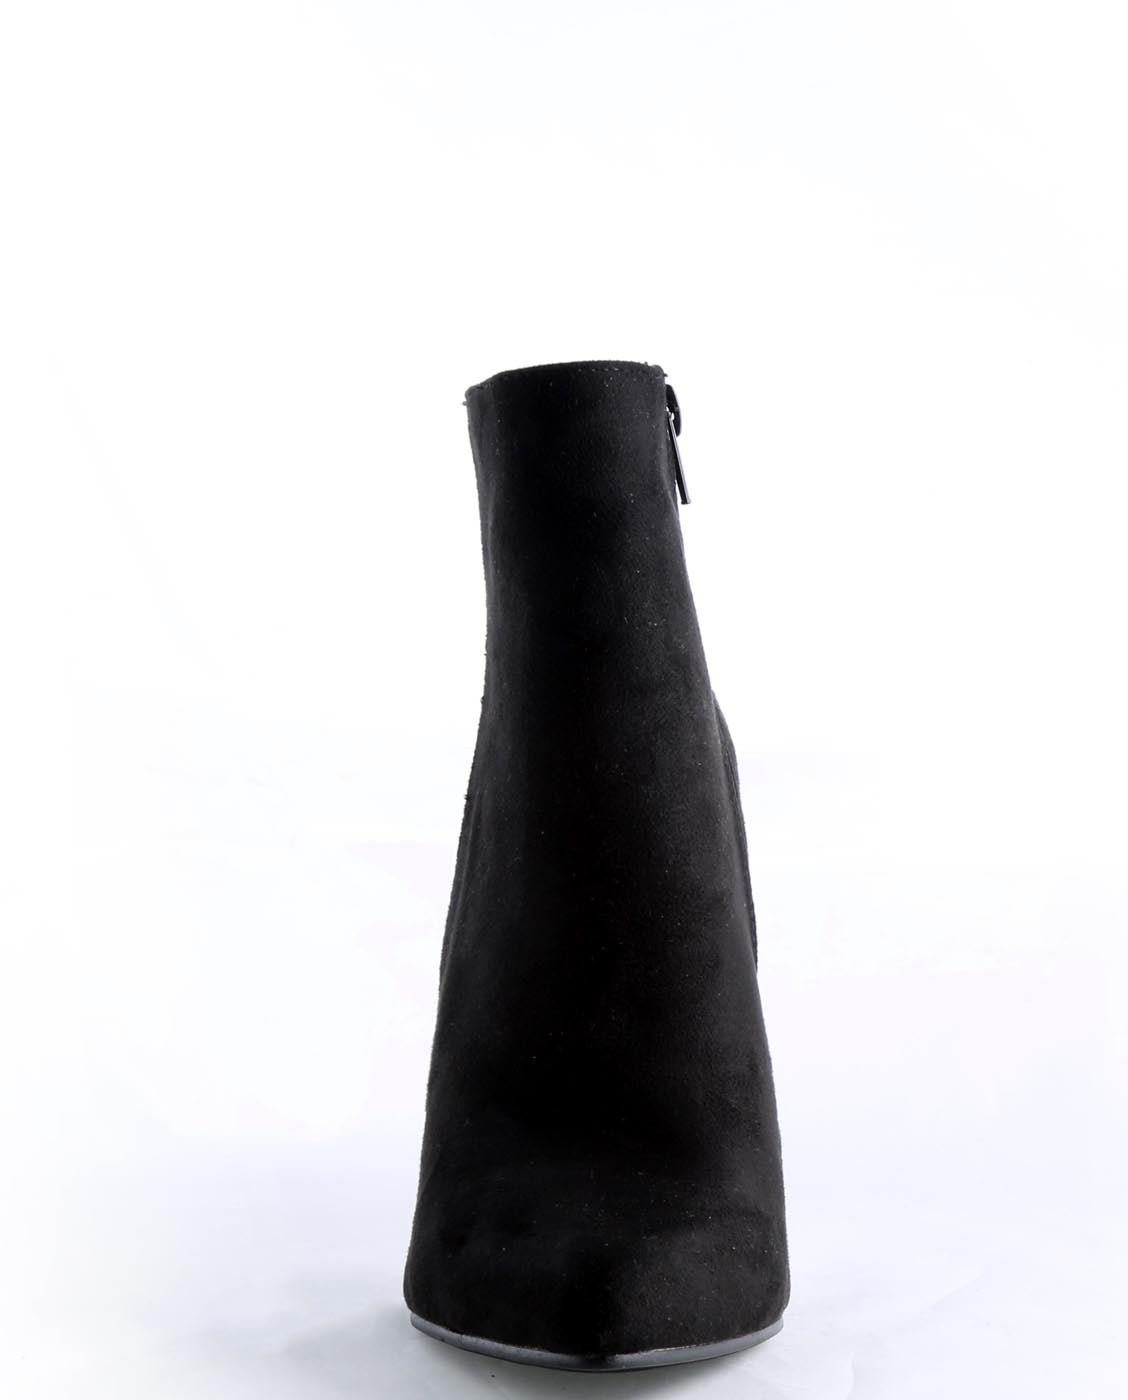 acrylic heel booties